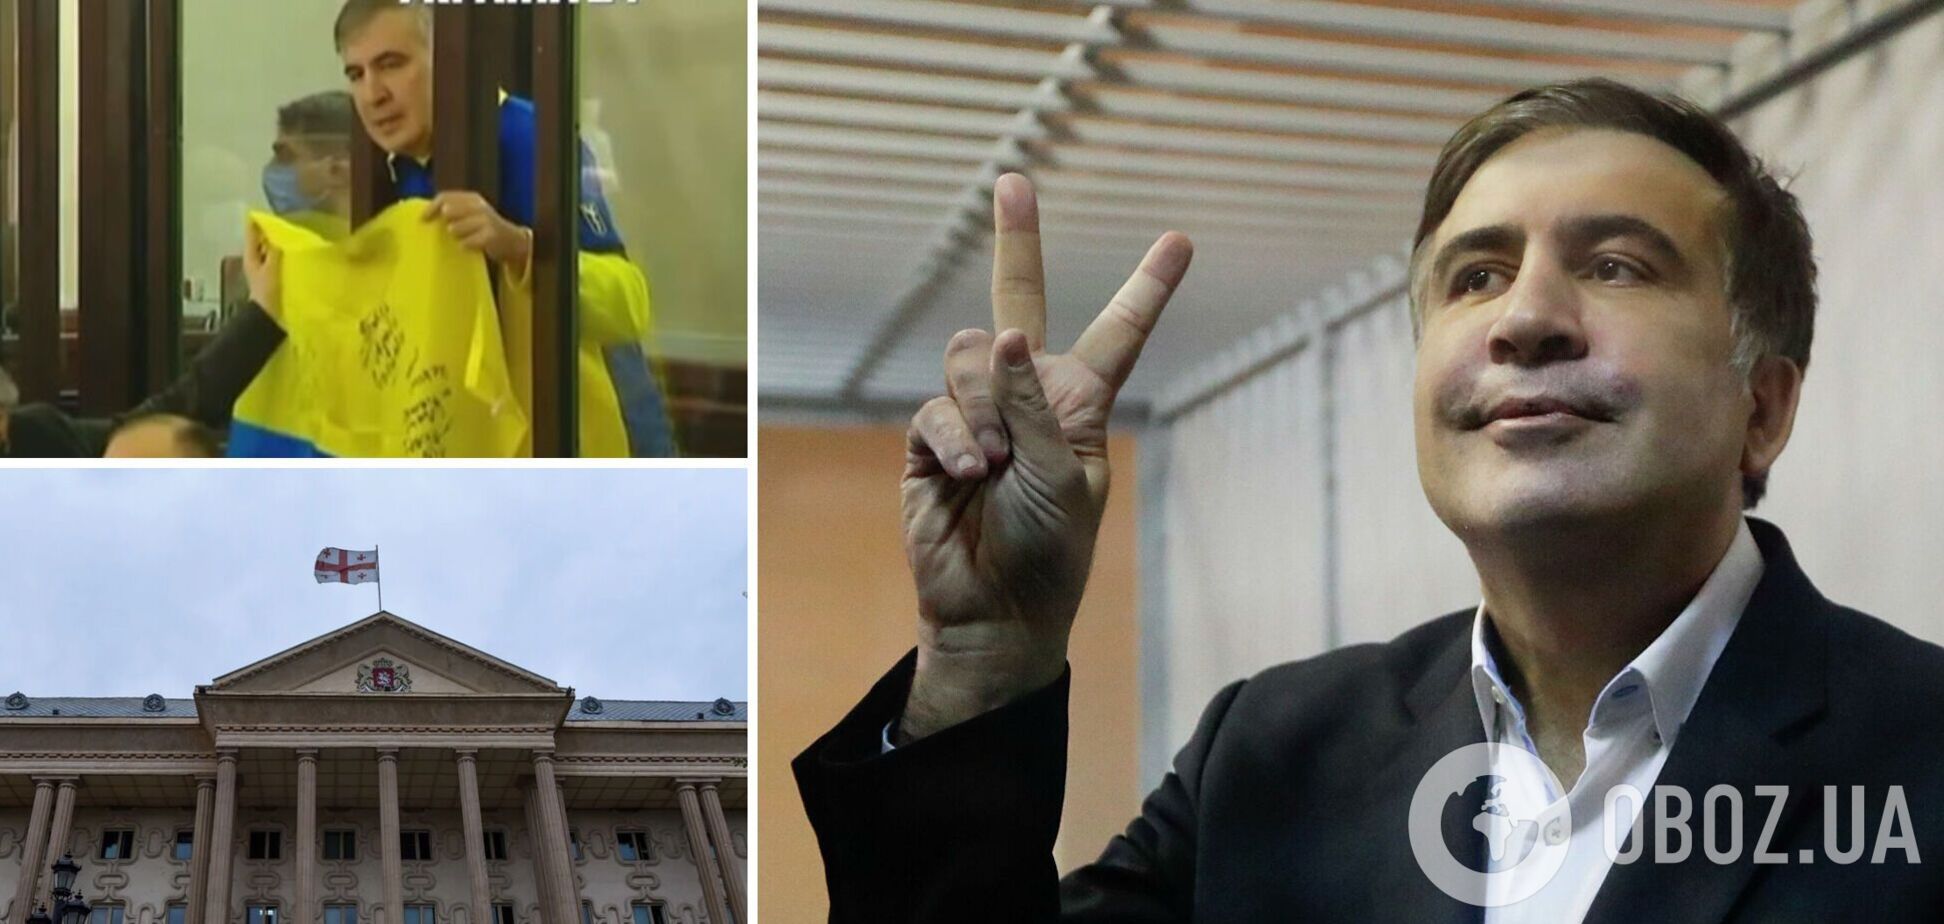 Саакашвили взял на заседание суда в Тбилиси украинский флаг, но оконфузился. Видео